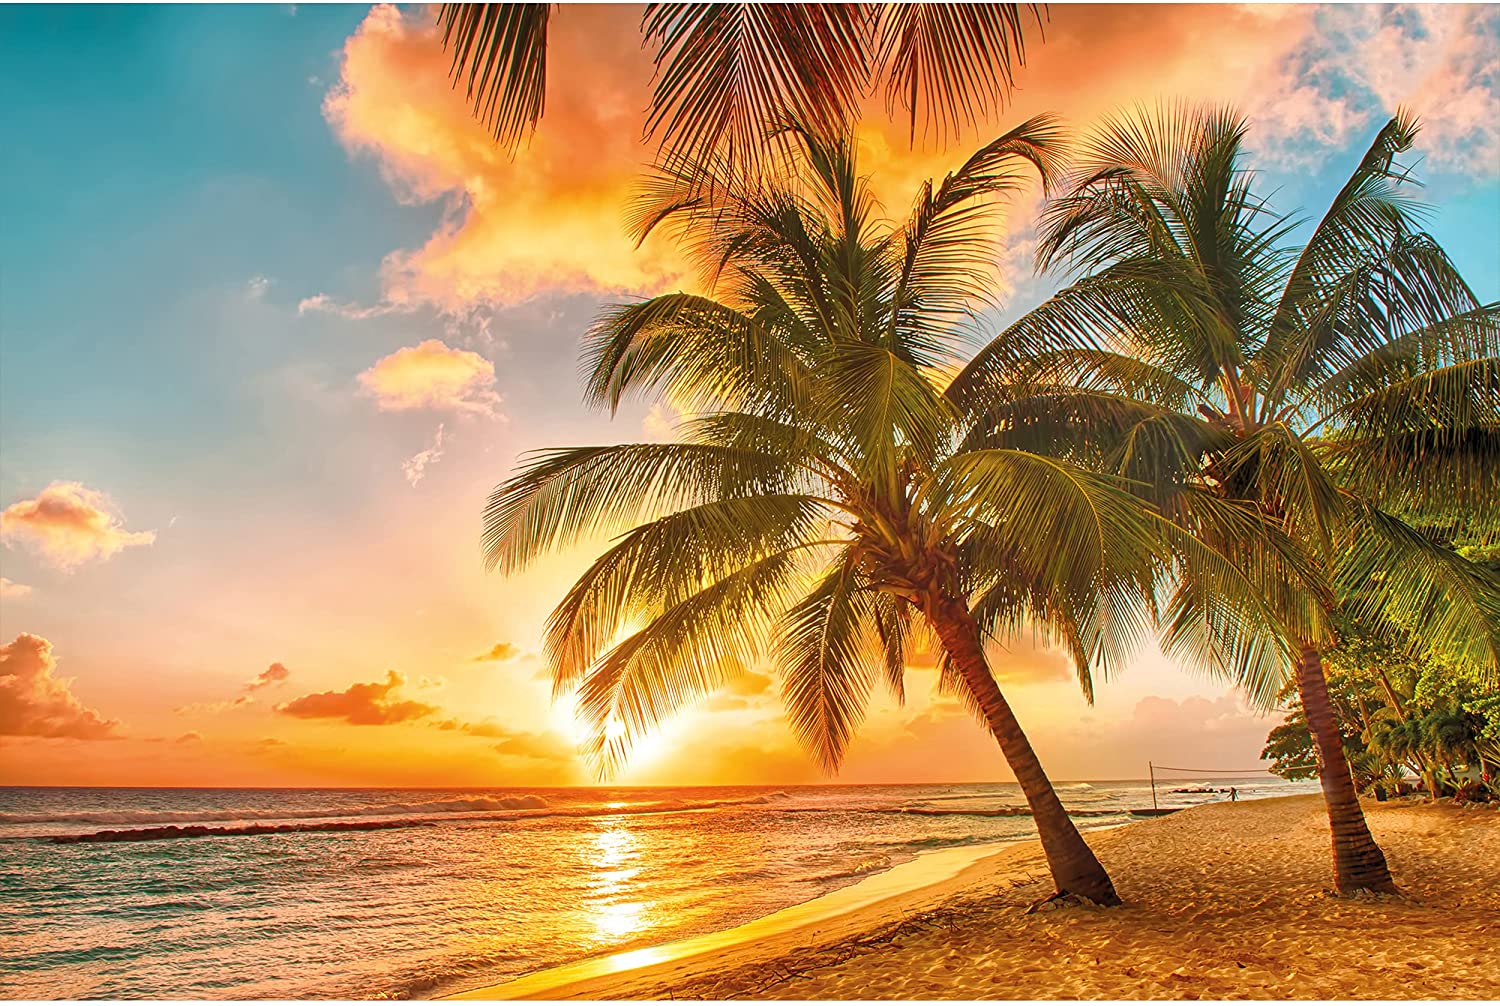 Caribbean Beach Sunset Wallpapers